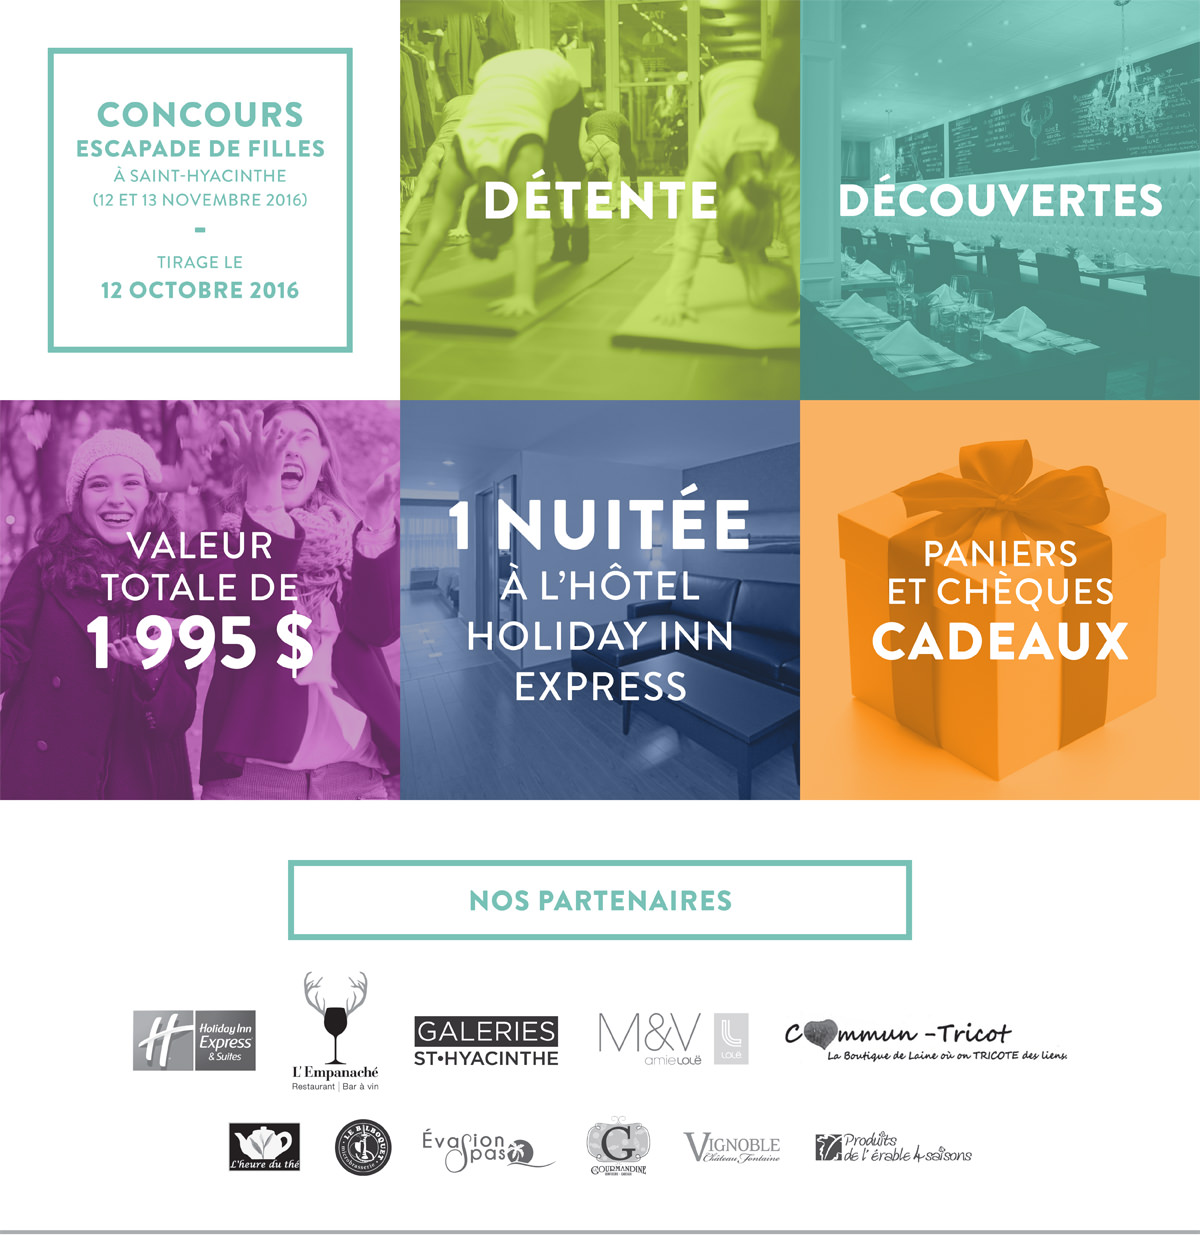 Concours escapade de filles à Saint-Hyacinthe, détente et découvertes, tourisme Saint-Hyacinthe